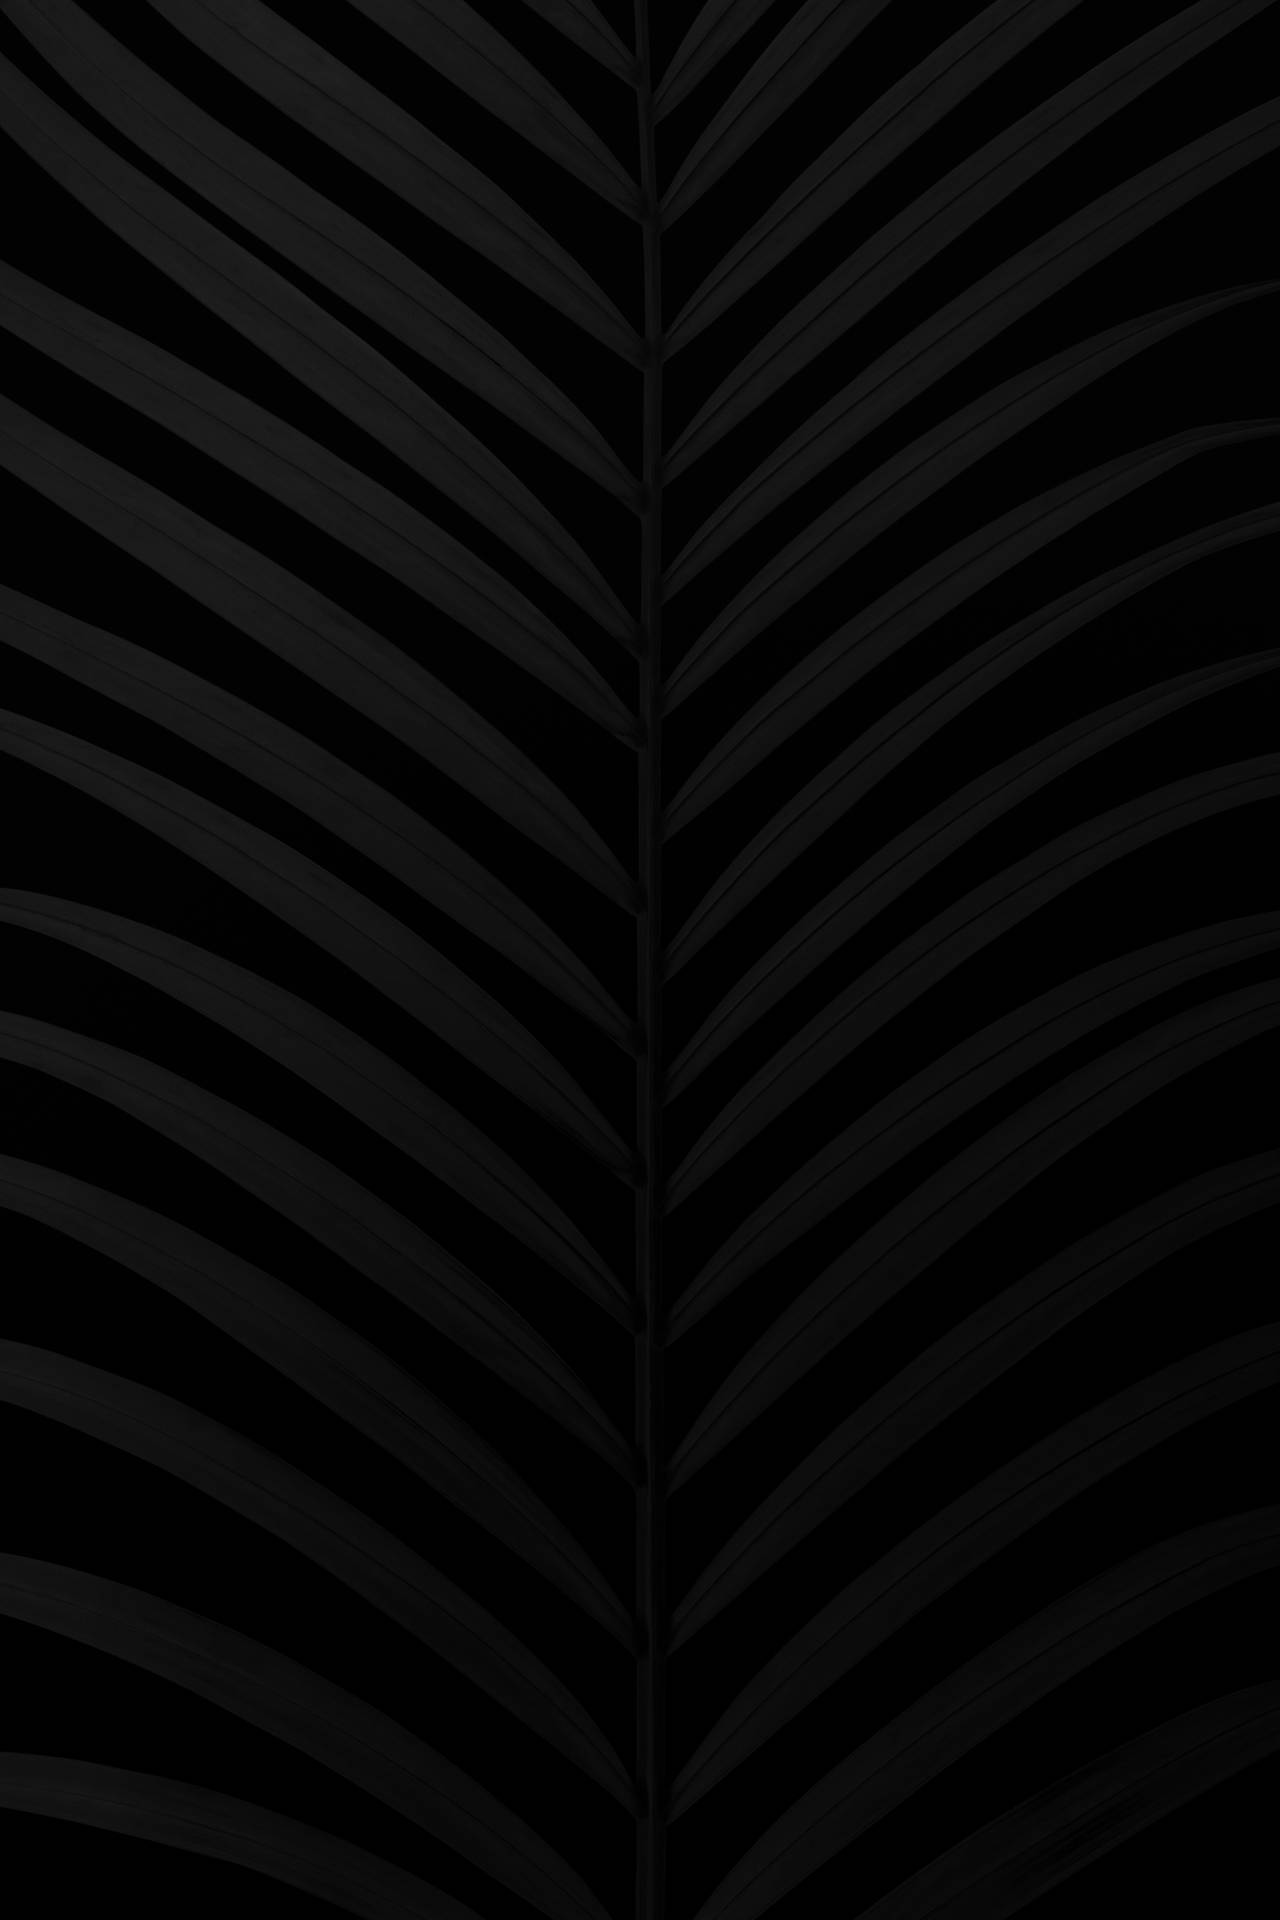 Free Matte Black Wallpaper Downloads, Matte Black Wallpaper for FREE